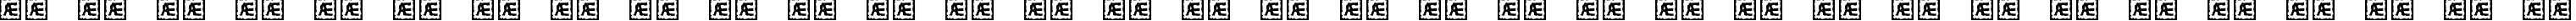 Пример написания русского алфавита шрифтом Visitor TT2 BRK